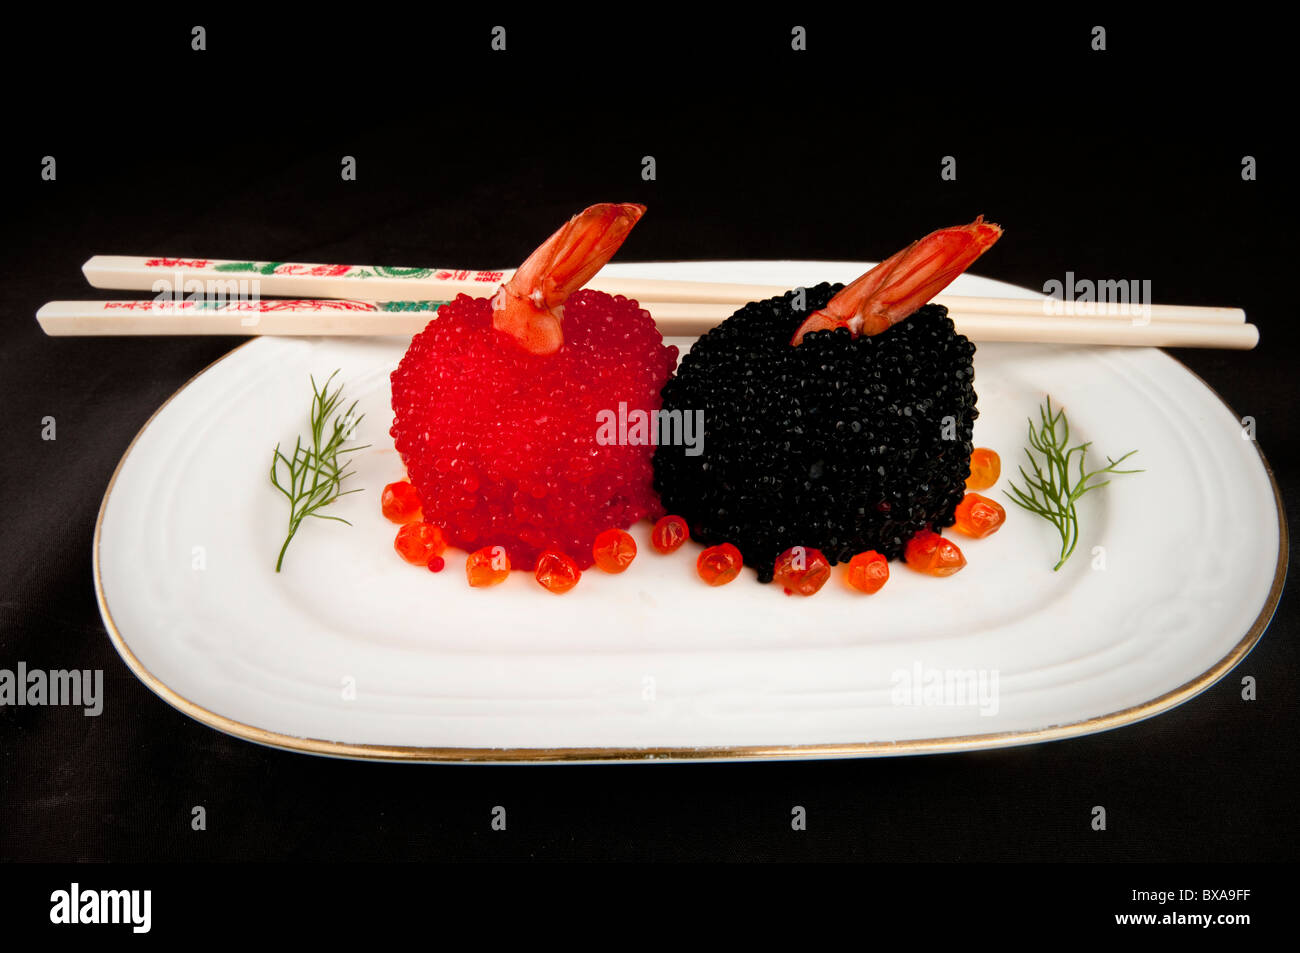 Sushi cubierto con rojo y negro huevas de pescado aderezado con eneldo y rodeado de huevas de salmón. Foto de stock